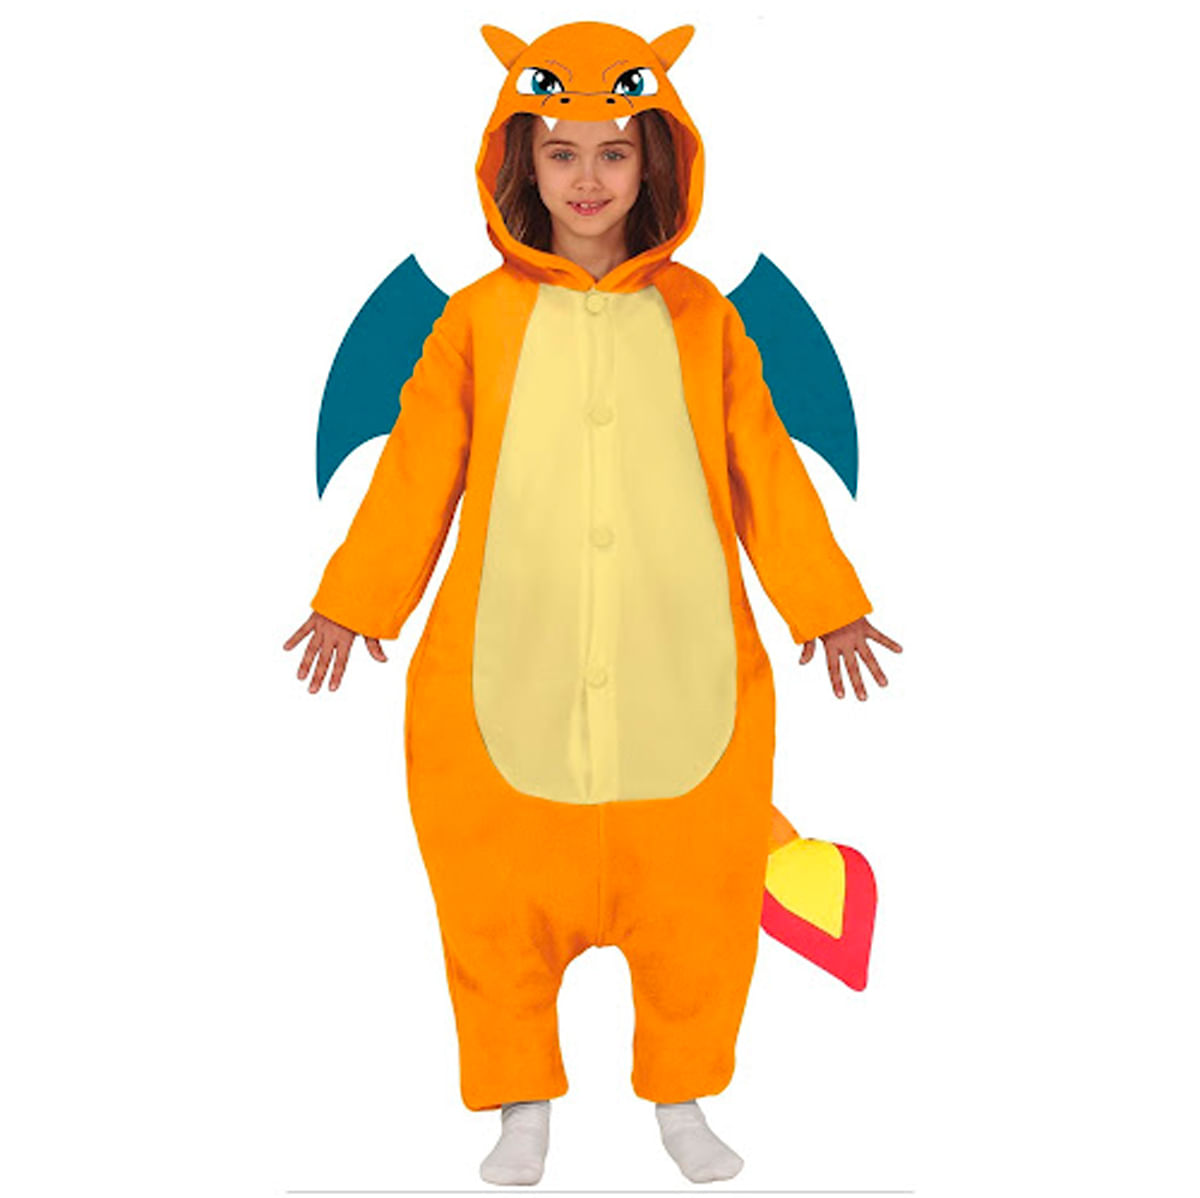 Disfraz de Pokémon para adultos, Pijama de una pieza para Halloween, de  cuerpo completo, ropa de dor qym unisex